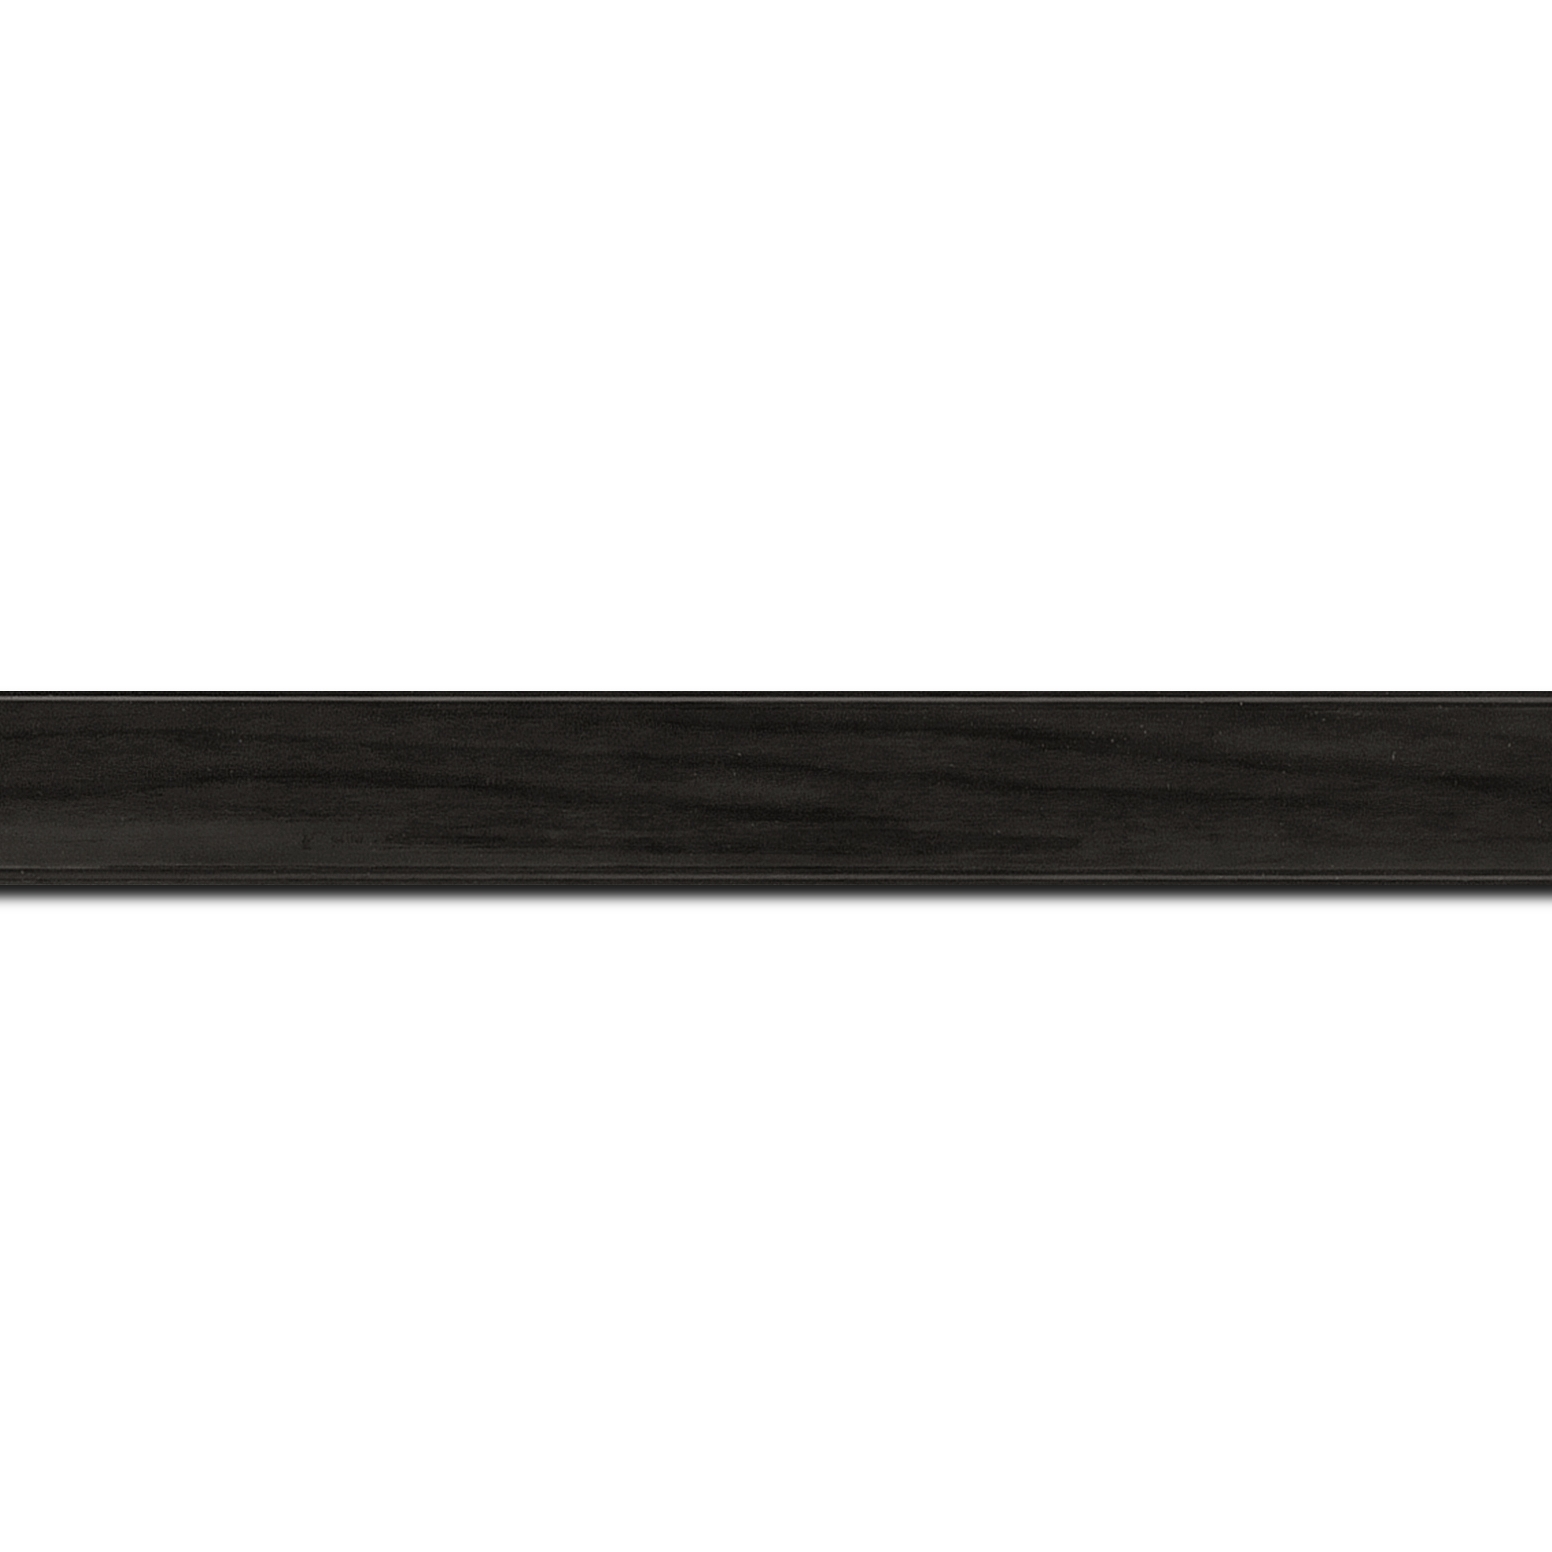 Pack par 12m, bois profil arrondi plongeant largeur 2cm couleur gris foncé vernis sur pin (veine du bois apparent) (longueur baguette pouvant varier entre 2.40m et 3m selon arrivage des bois)